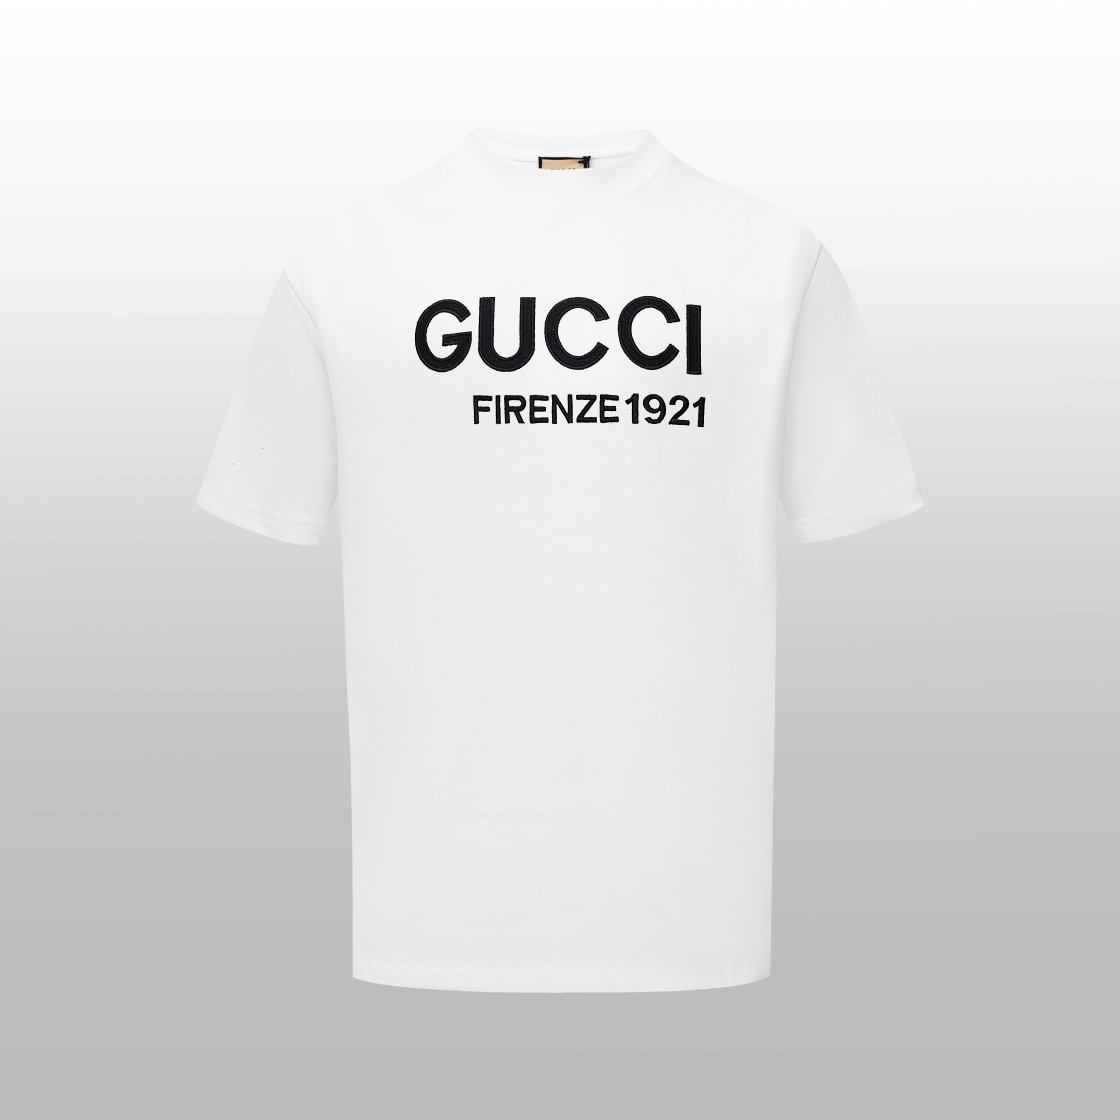 Gucci Clothing T-Shirt Black White Unisex Short Sleeve